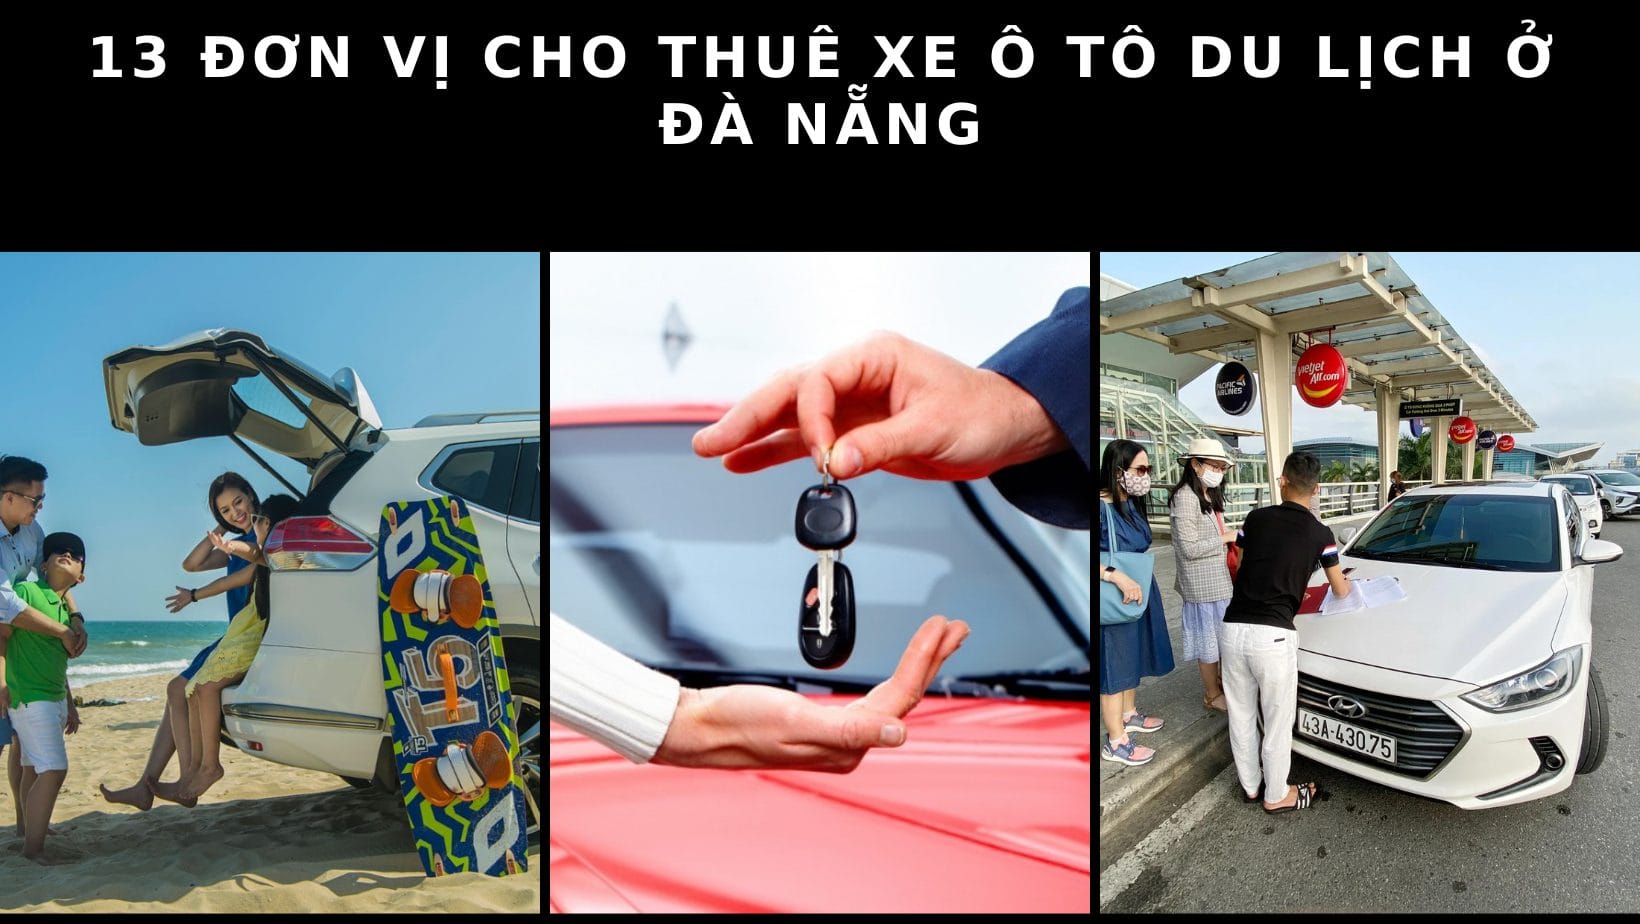 Top 8 đơn vị cho thuê xe 45 chỗ tại Đà Nẵng tốt nhất hiện nay